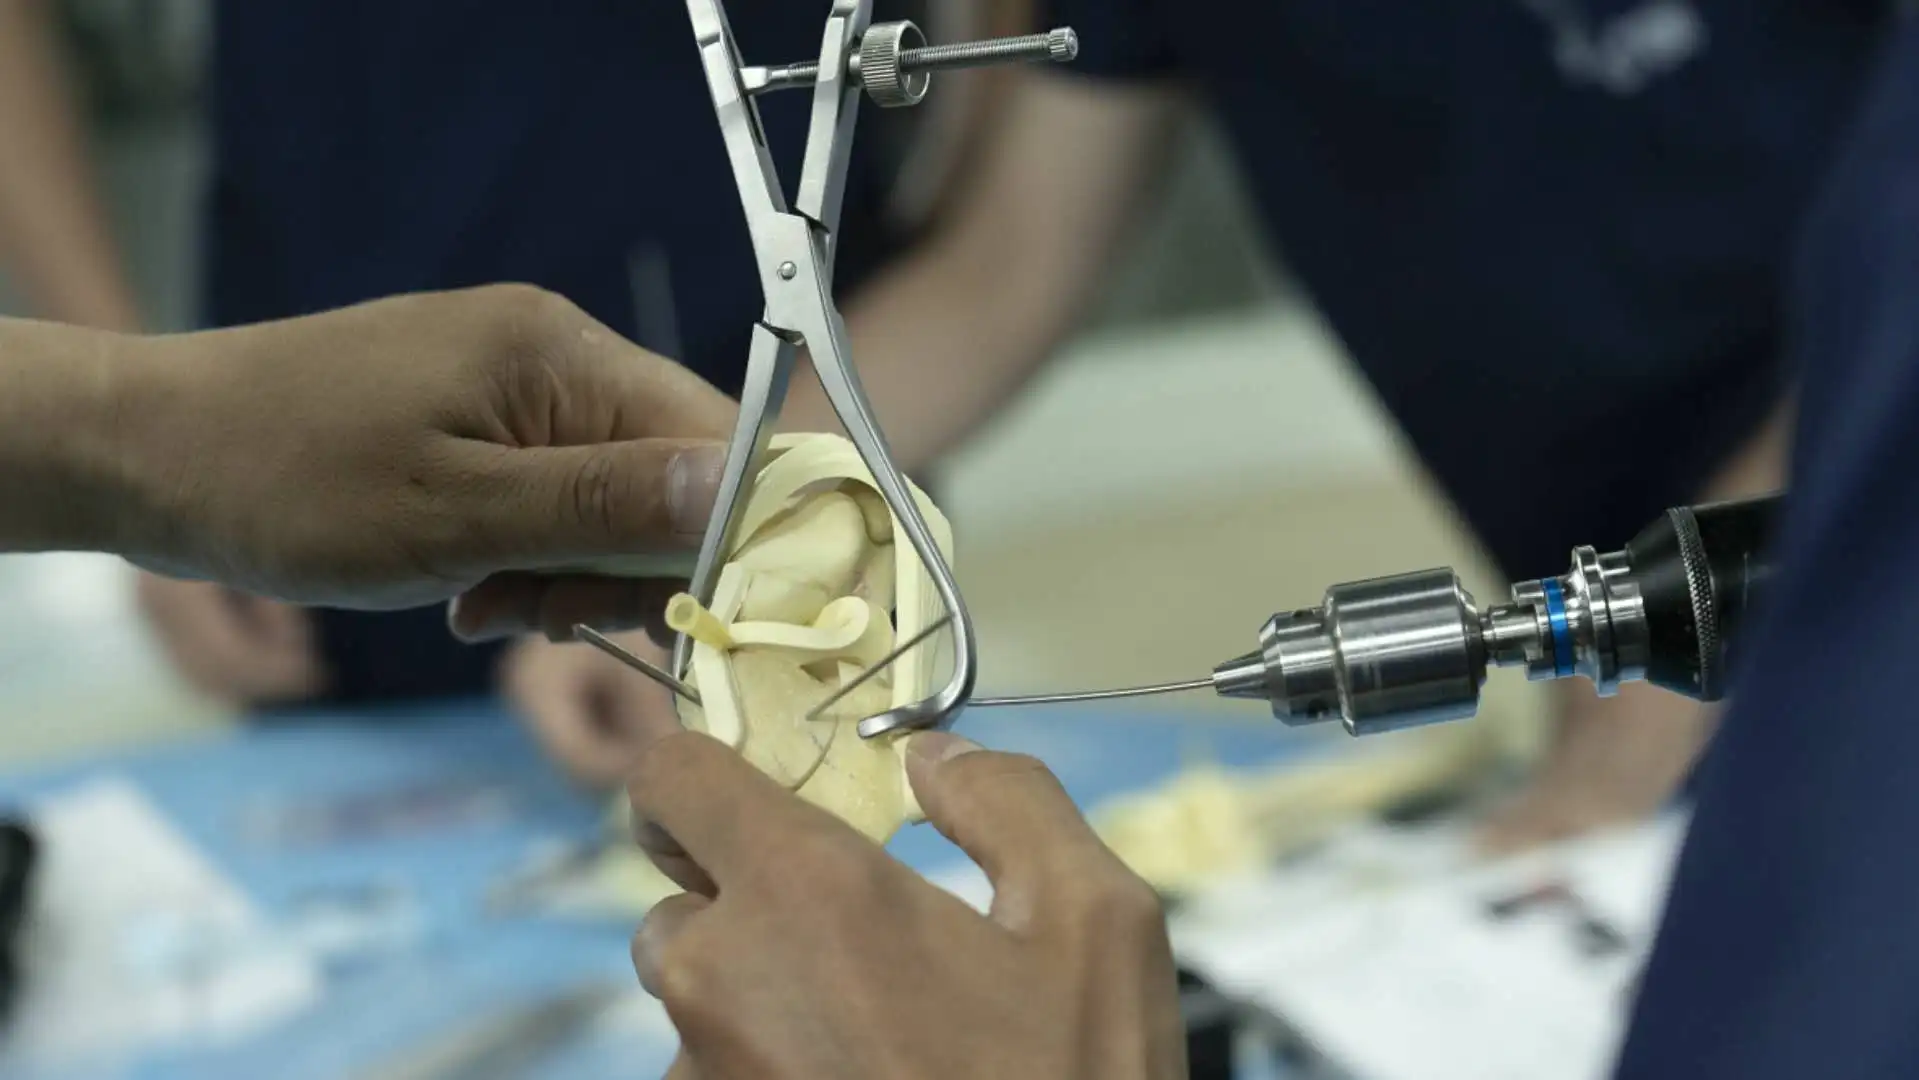 兽医手术器械tplo专用复位钳,质量高,设计精良,有助于tplo手术 